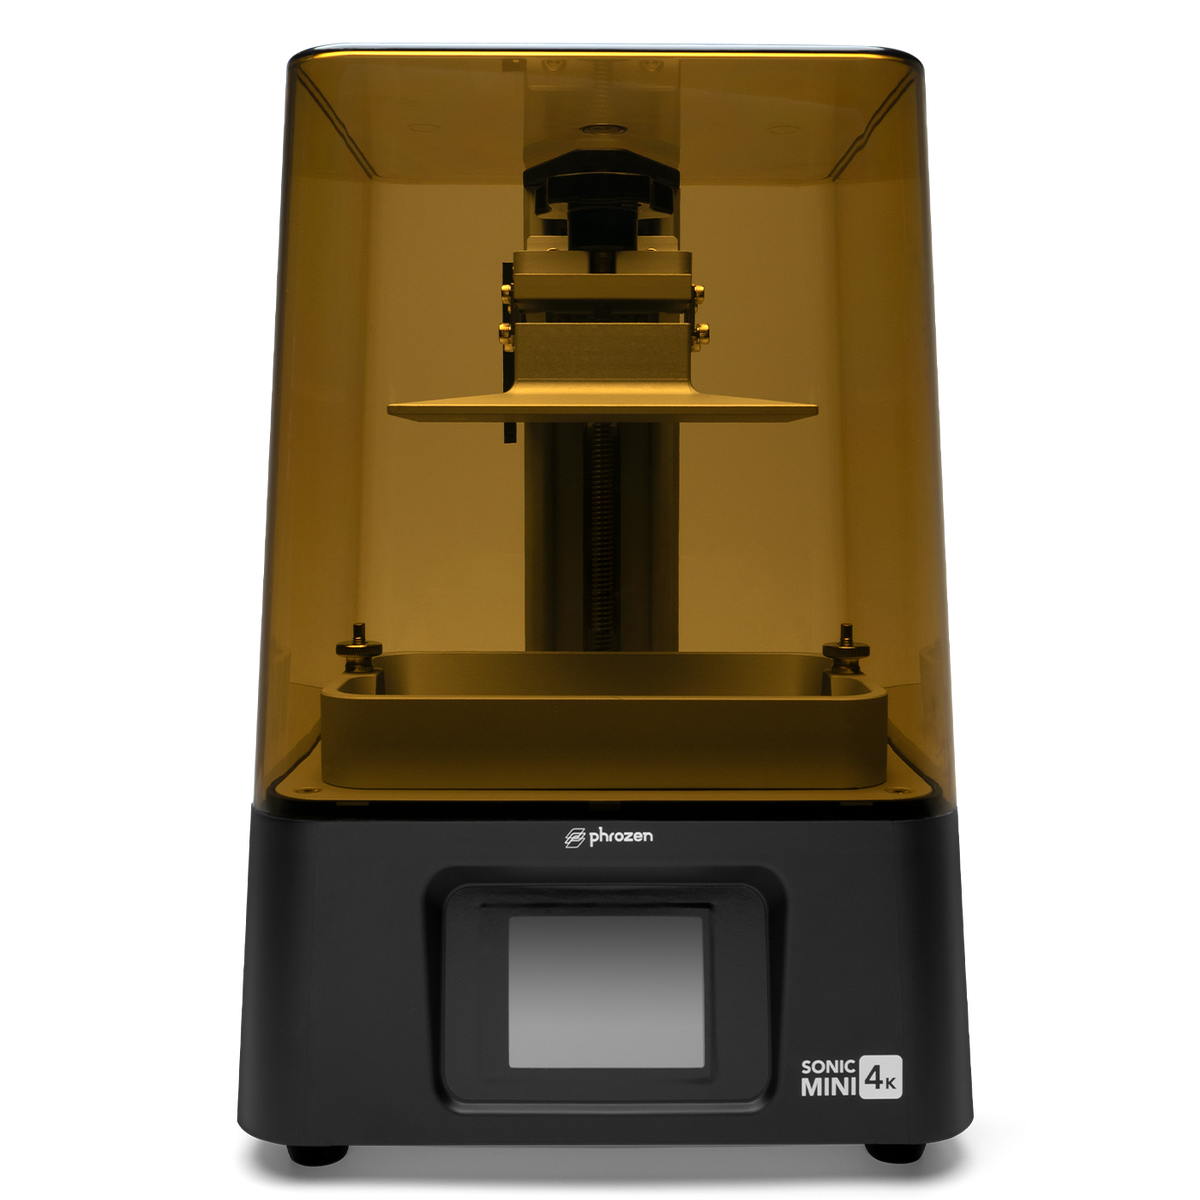 Phrozen Sonic Mini Resin 8K 3D Printer  Phrozen Technology: Resin 3D  Printer Manufacturer